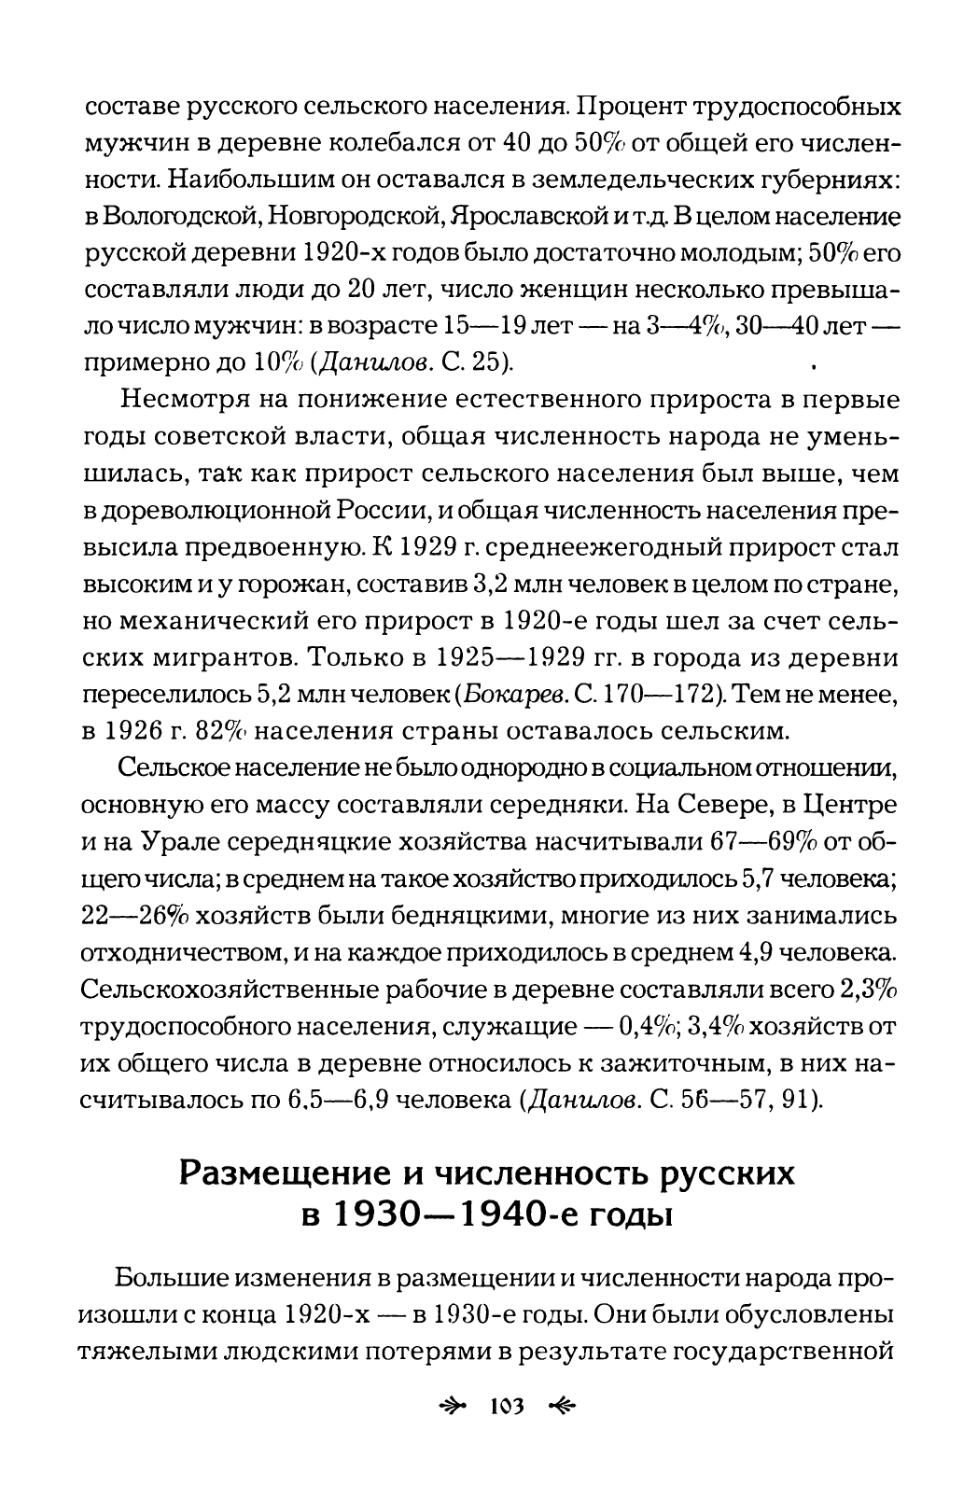 Размещение  и  численность  русских в  1930—1940-е  годы